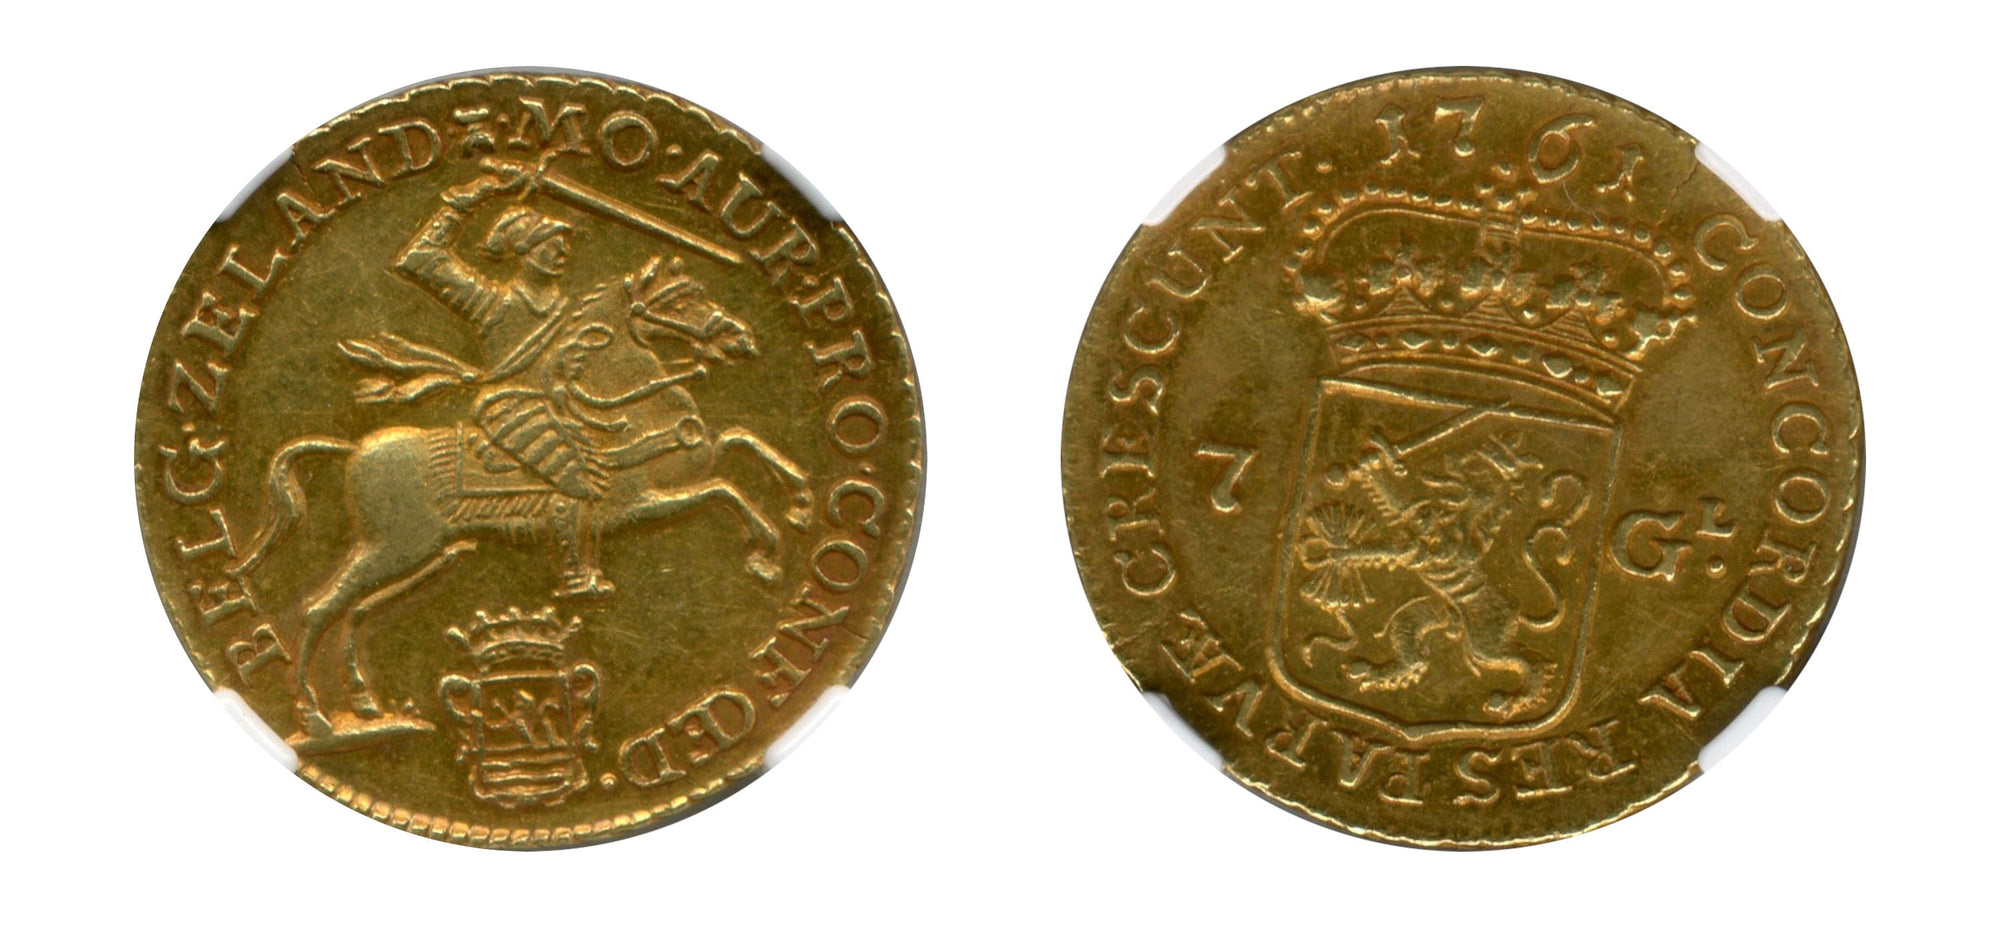 1761-Netherlands Gold 7 Gulden NGC AU 58 - Hard Asset Management, Inc